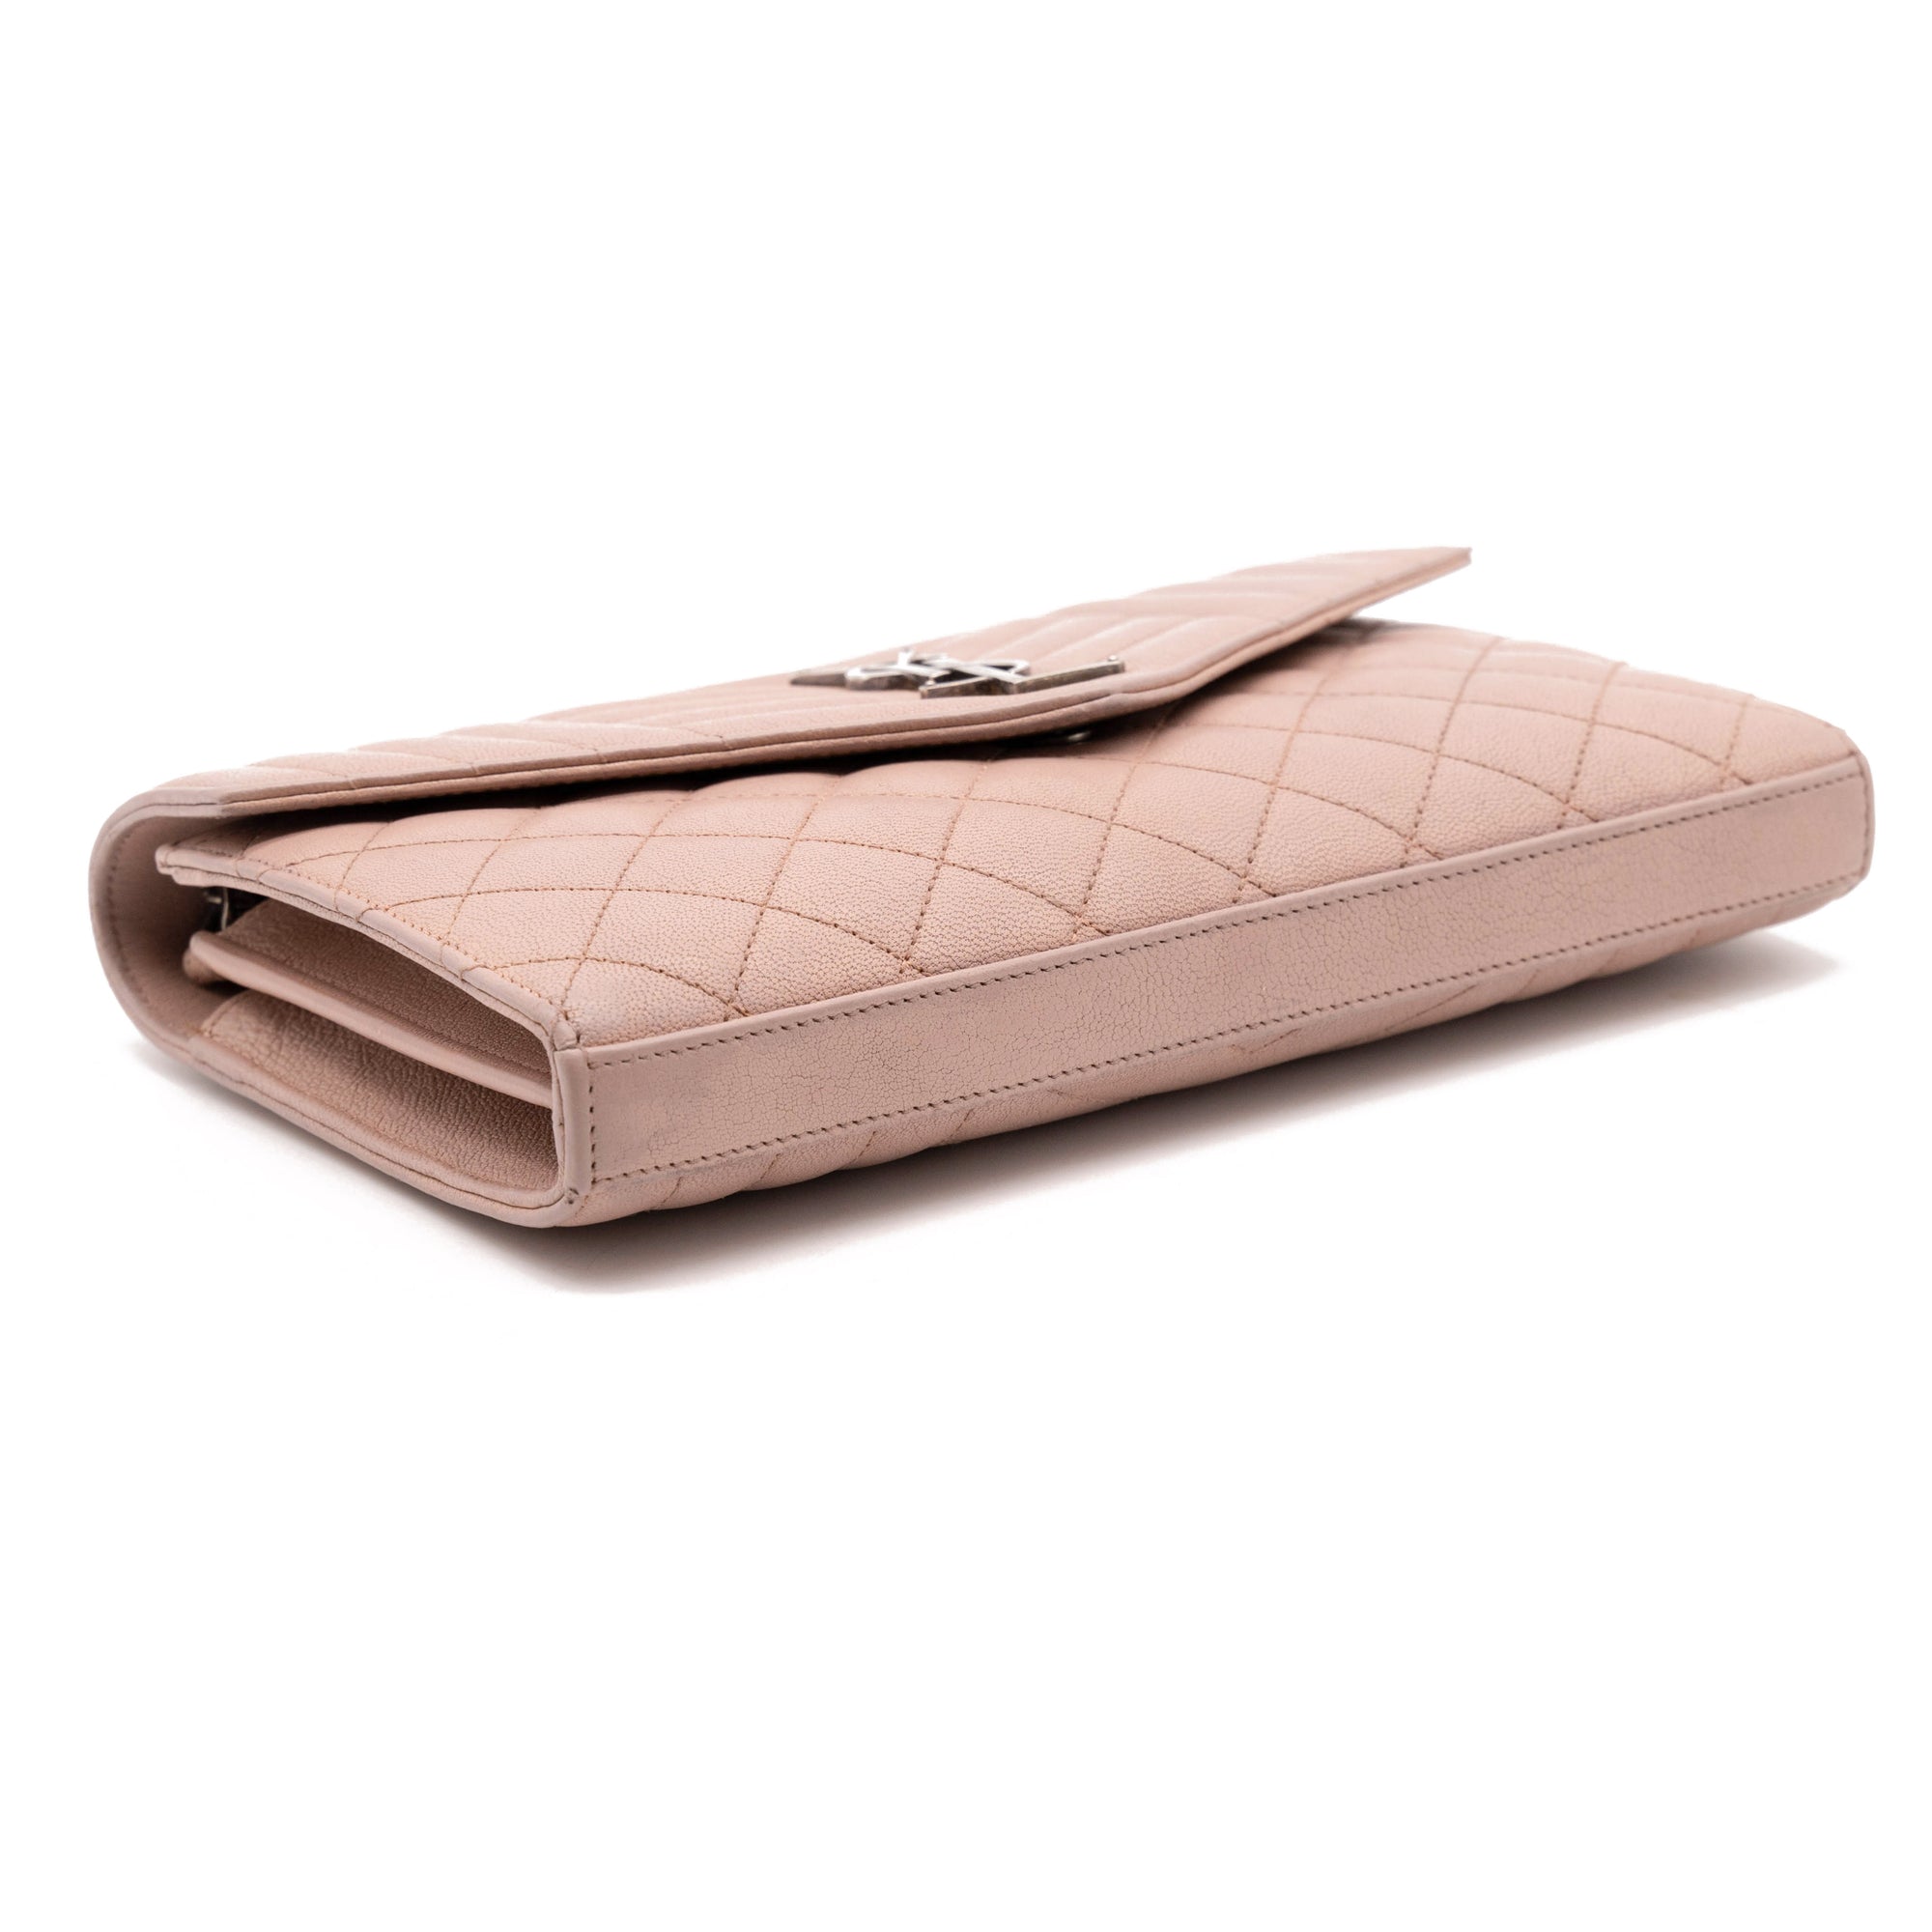 Chanel Small Flap Wallet, Lambskin, Beige GHW - Laulay Luxury